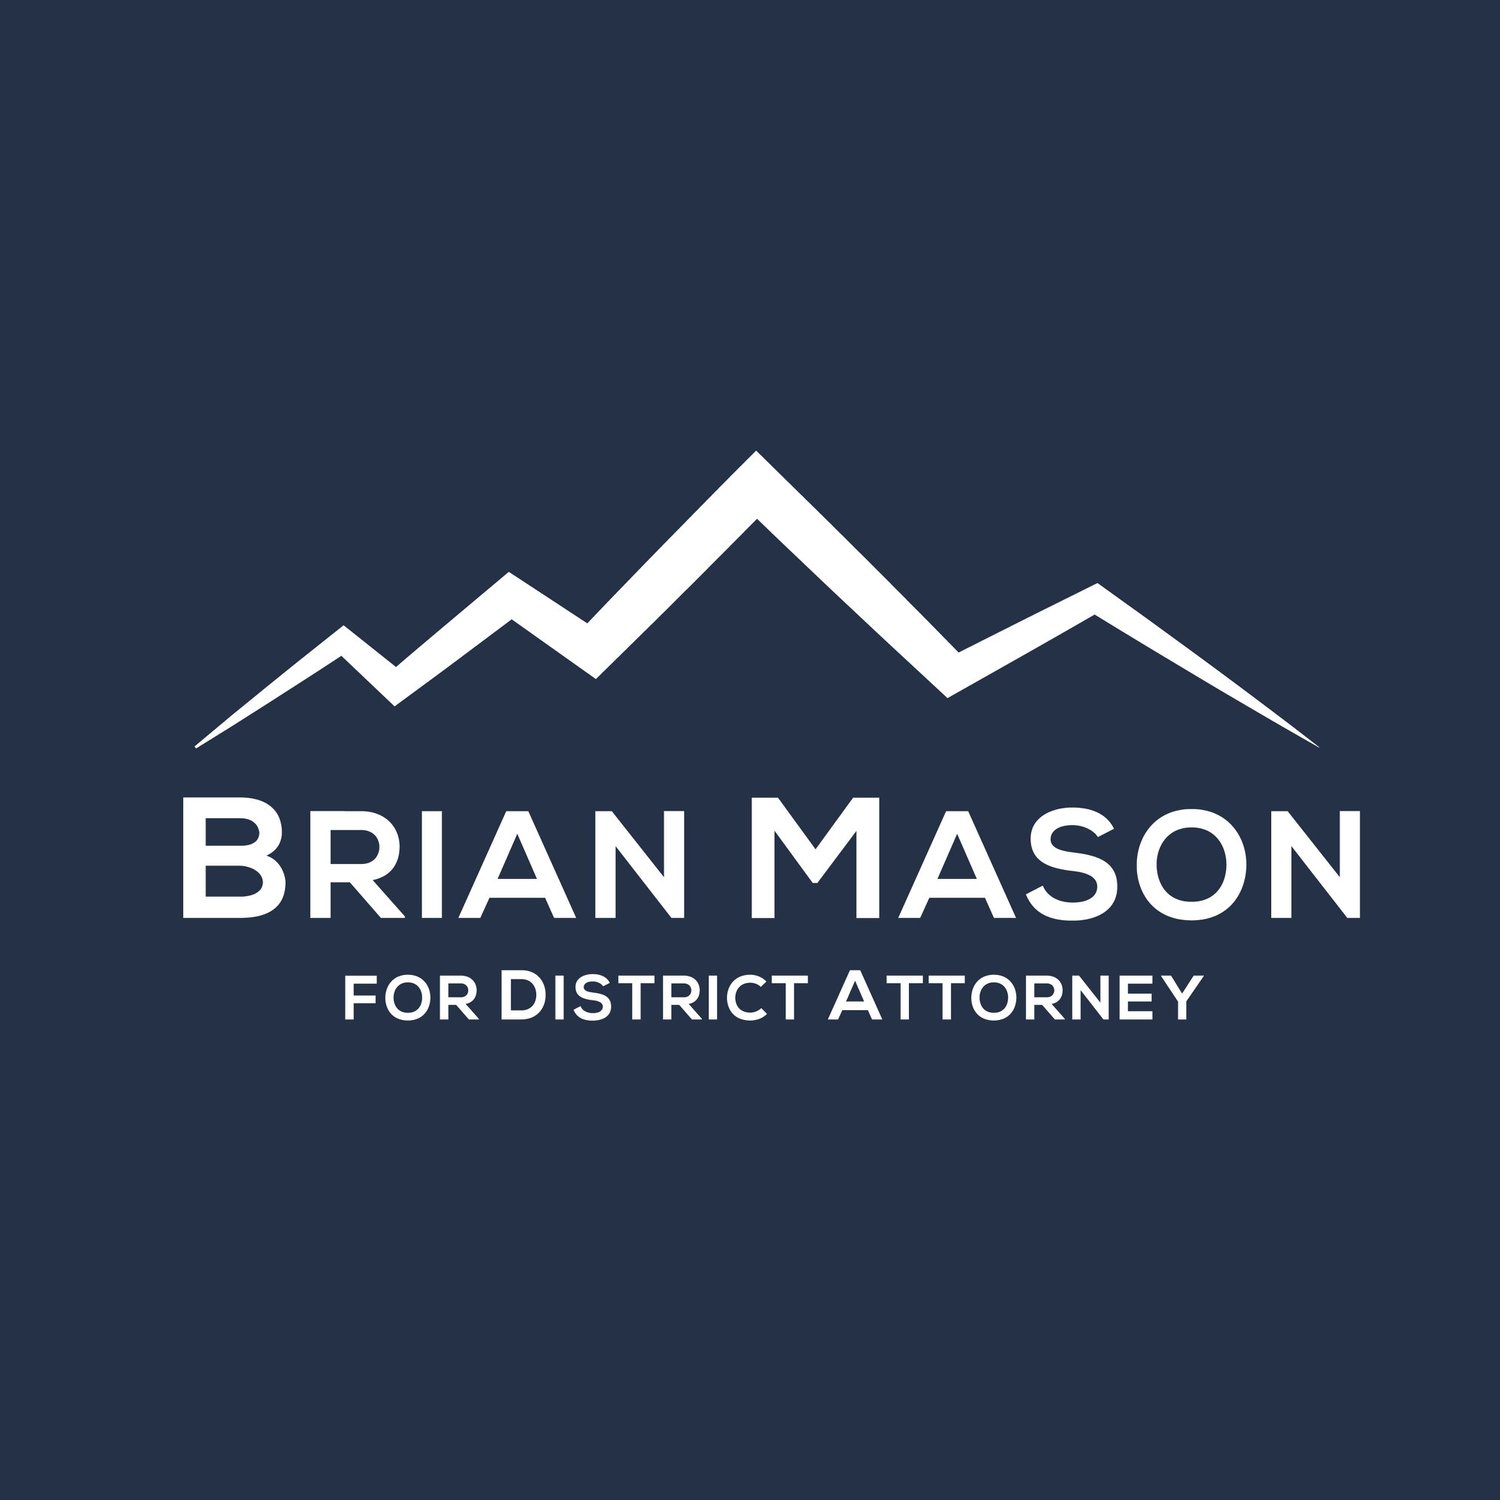 Brian Mason for District Attorney